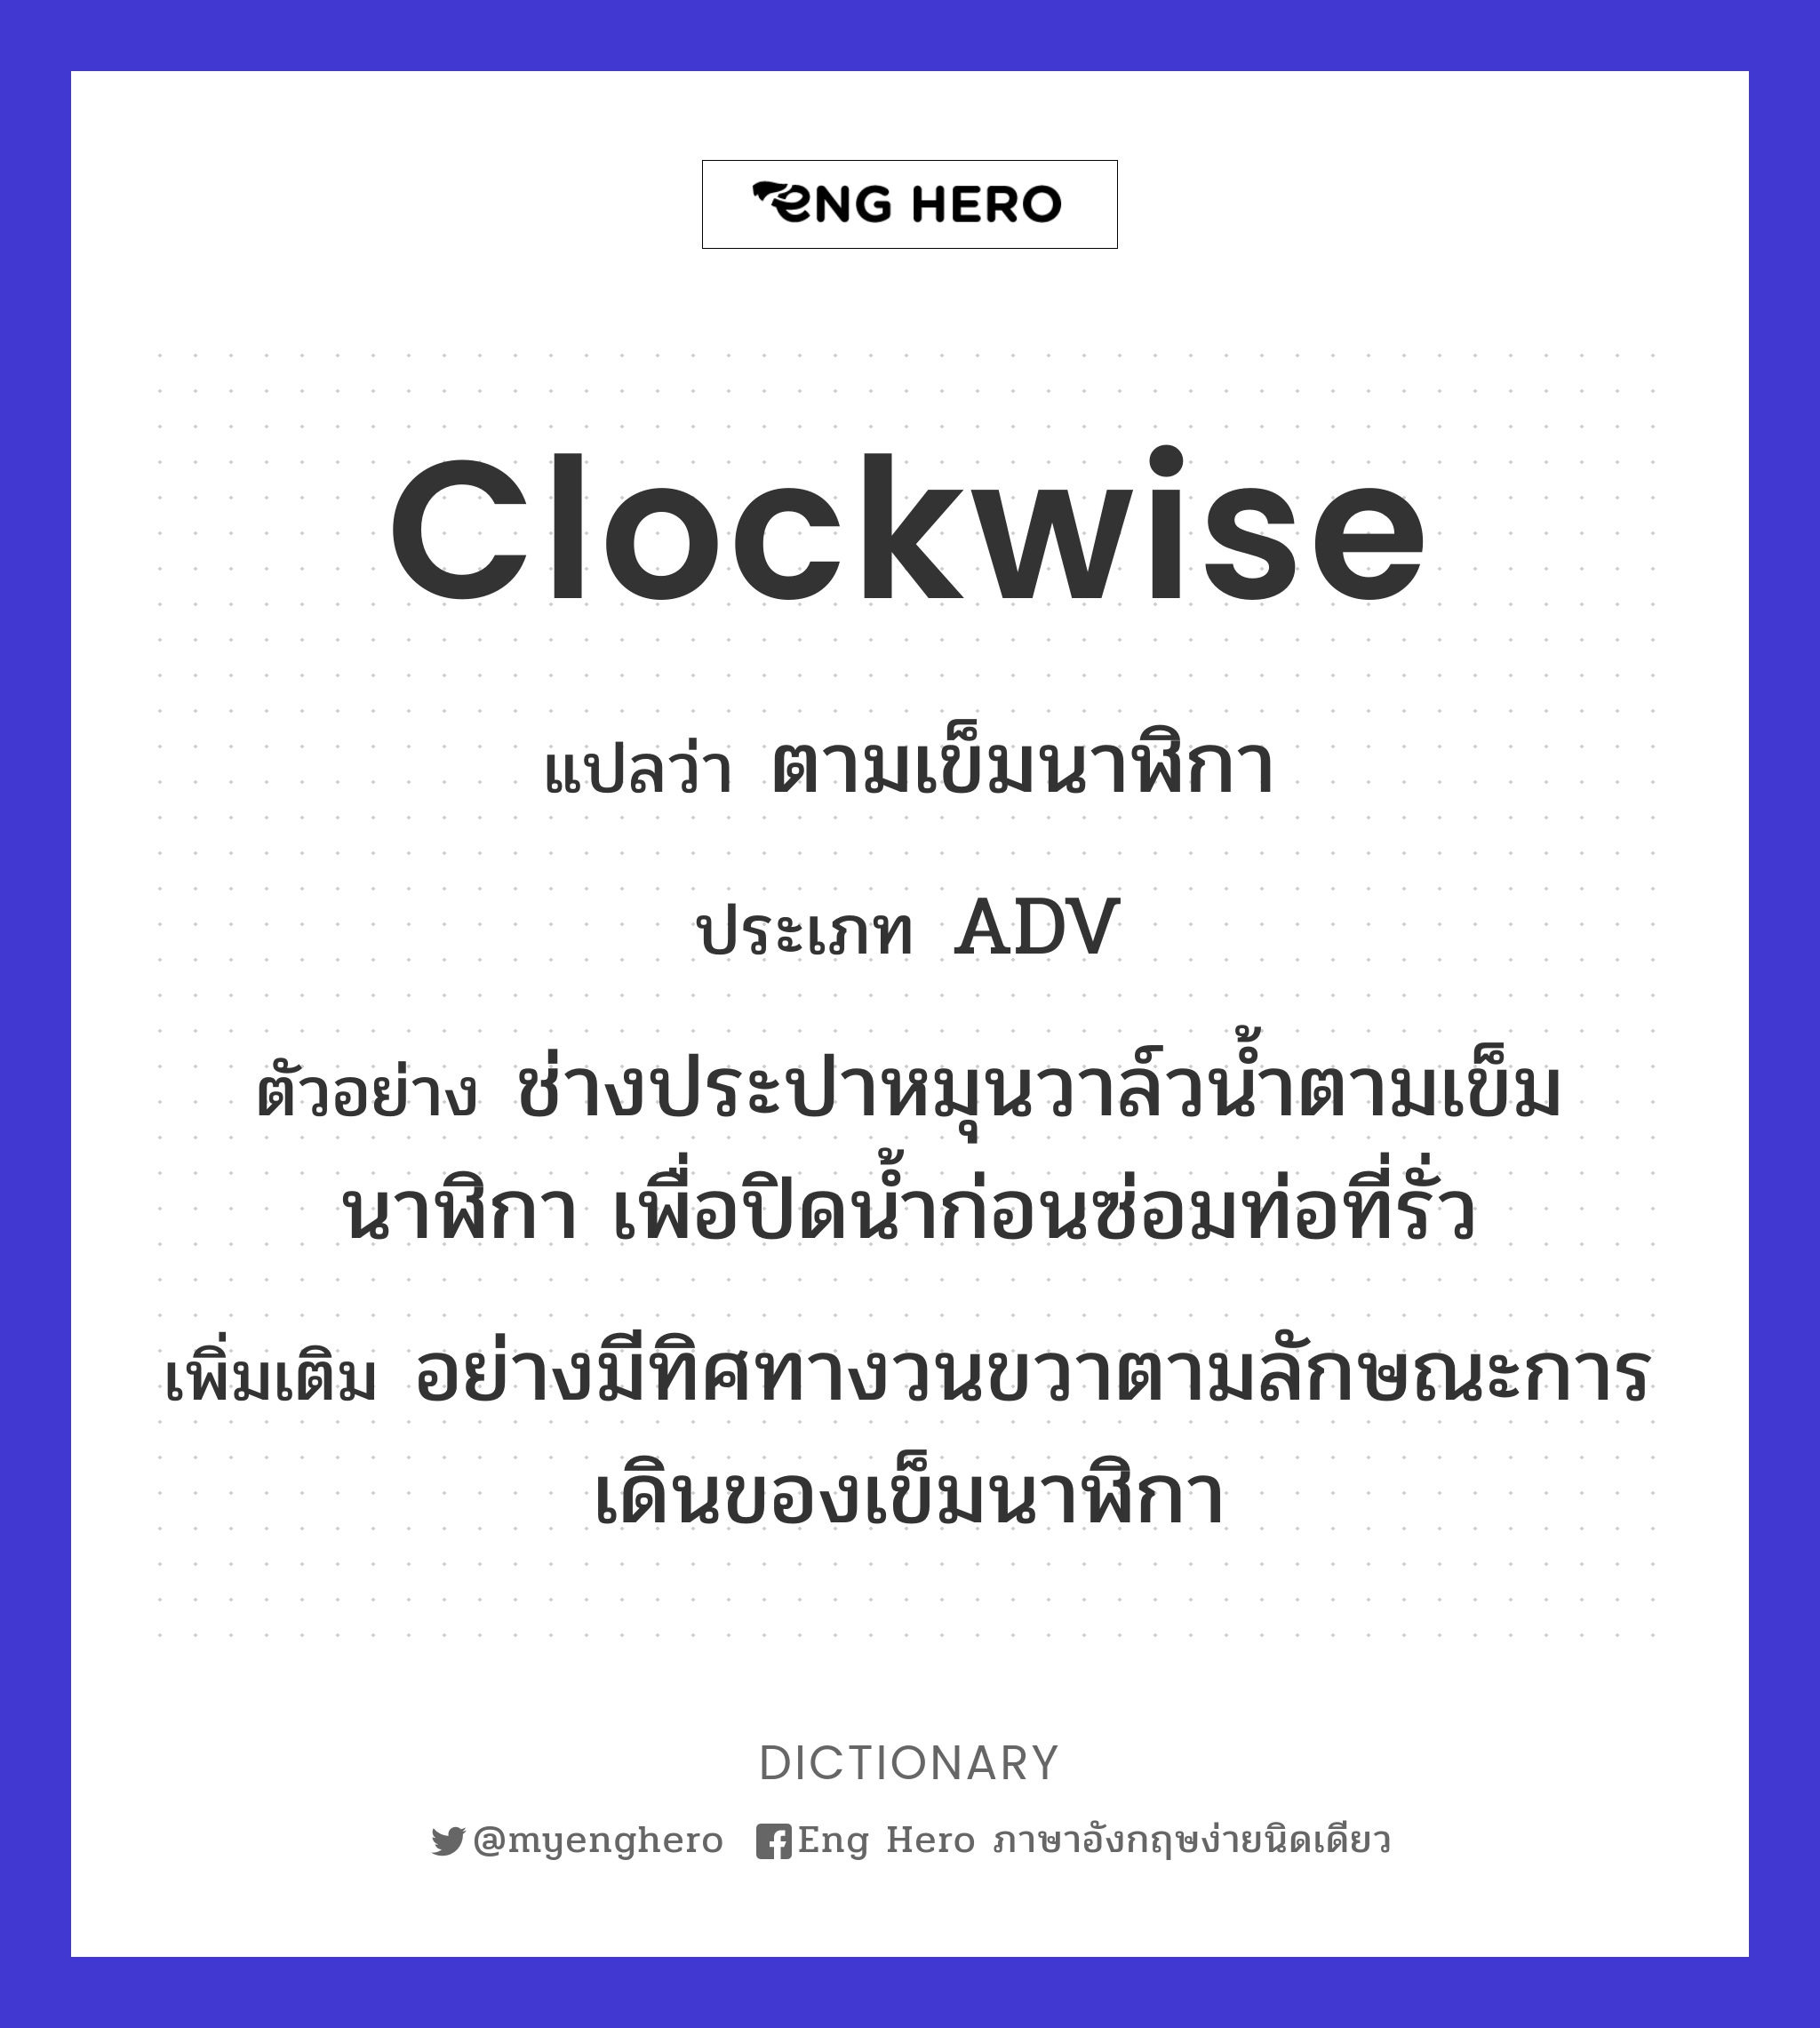 clockwise